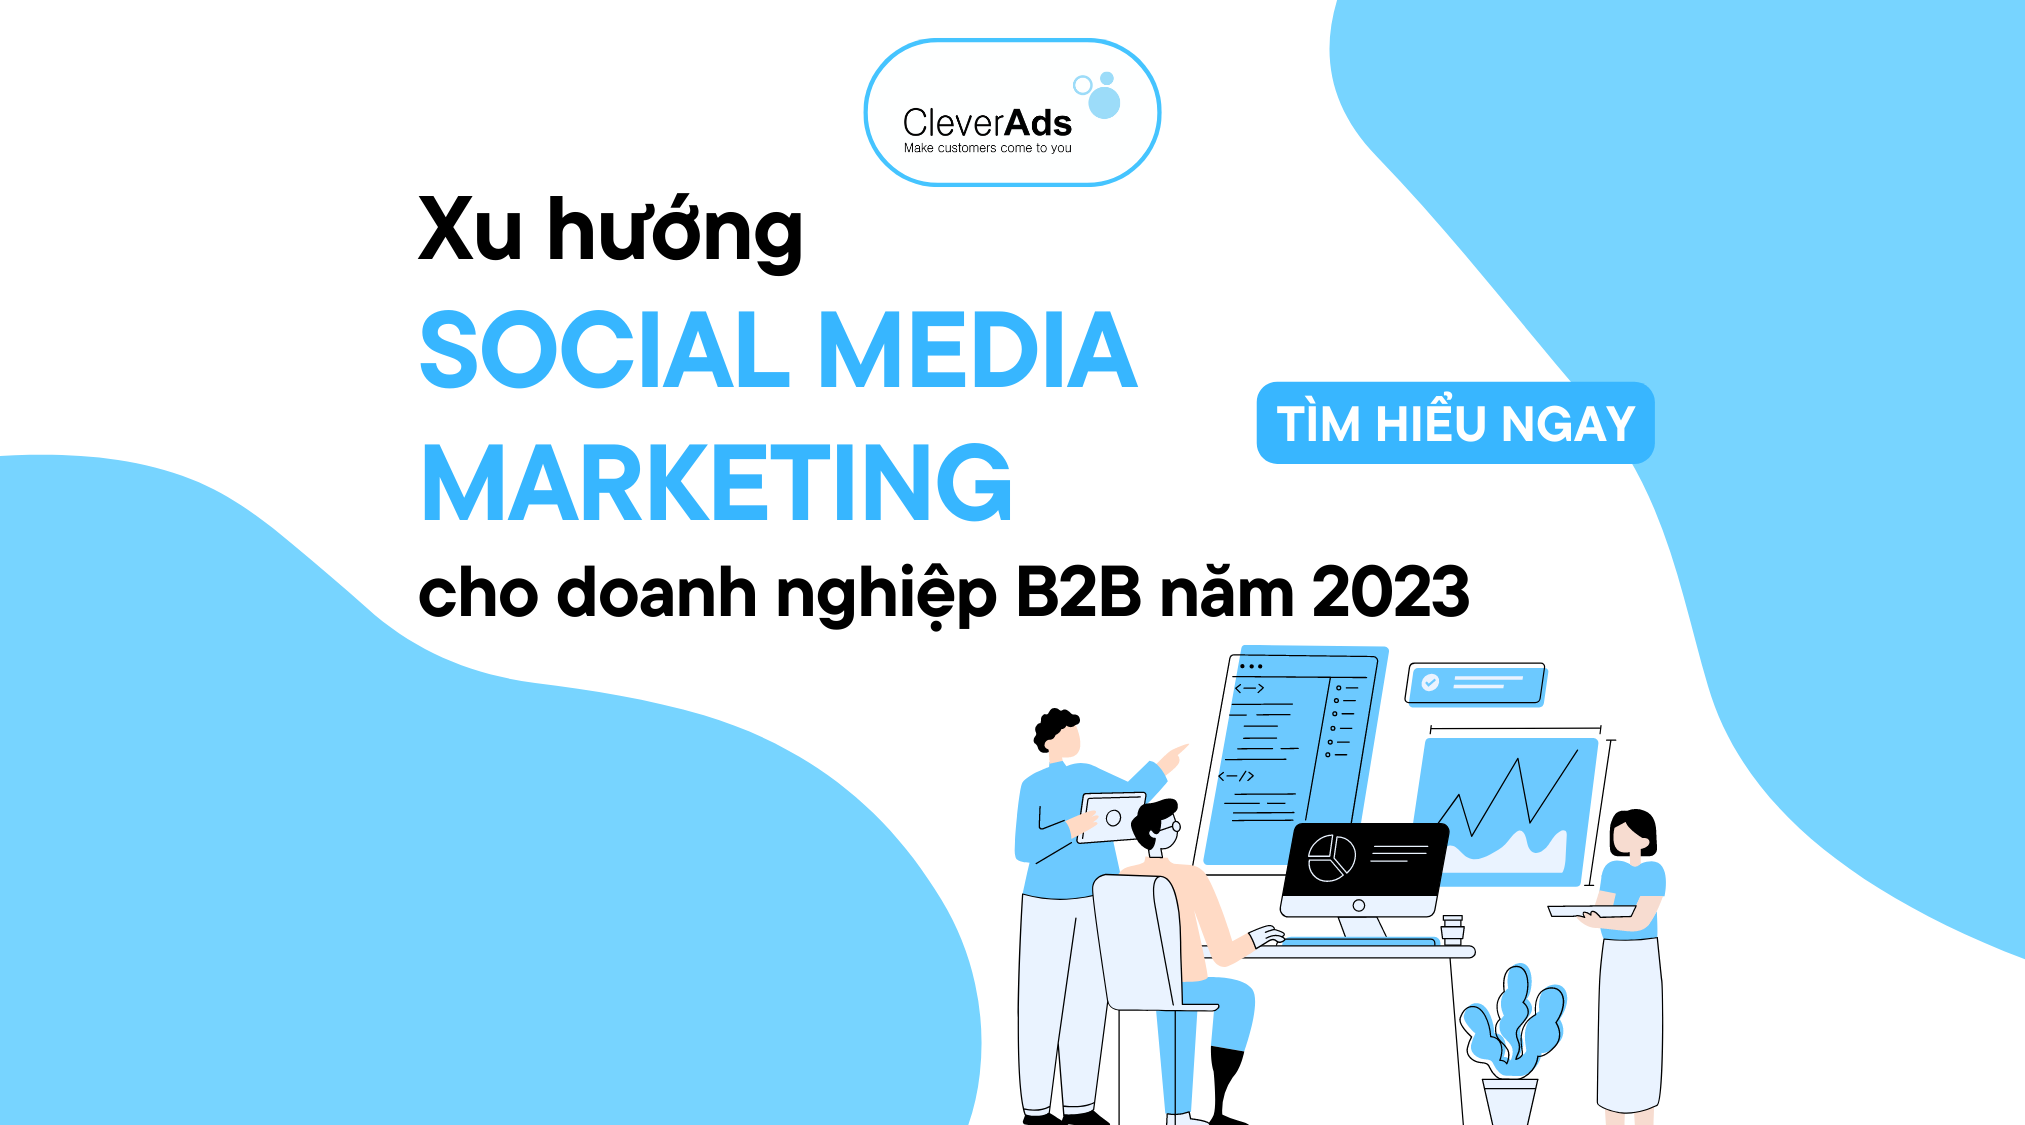 Xu hướng Social Media Marketing cho Doanh nghiệp B2B năm 2023